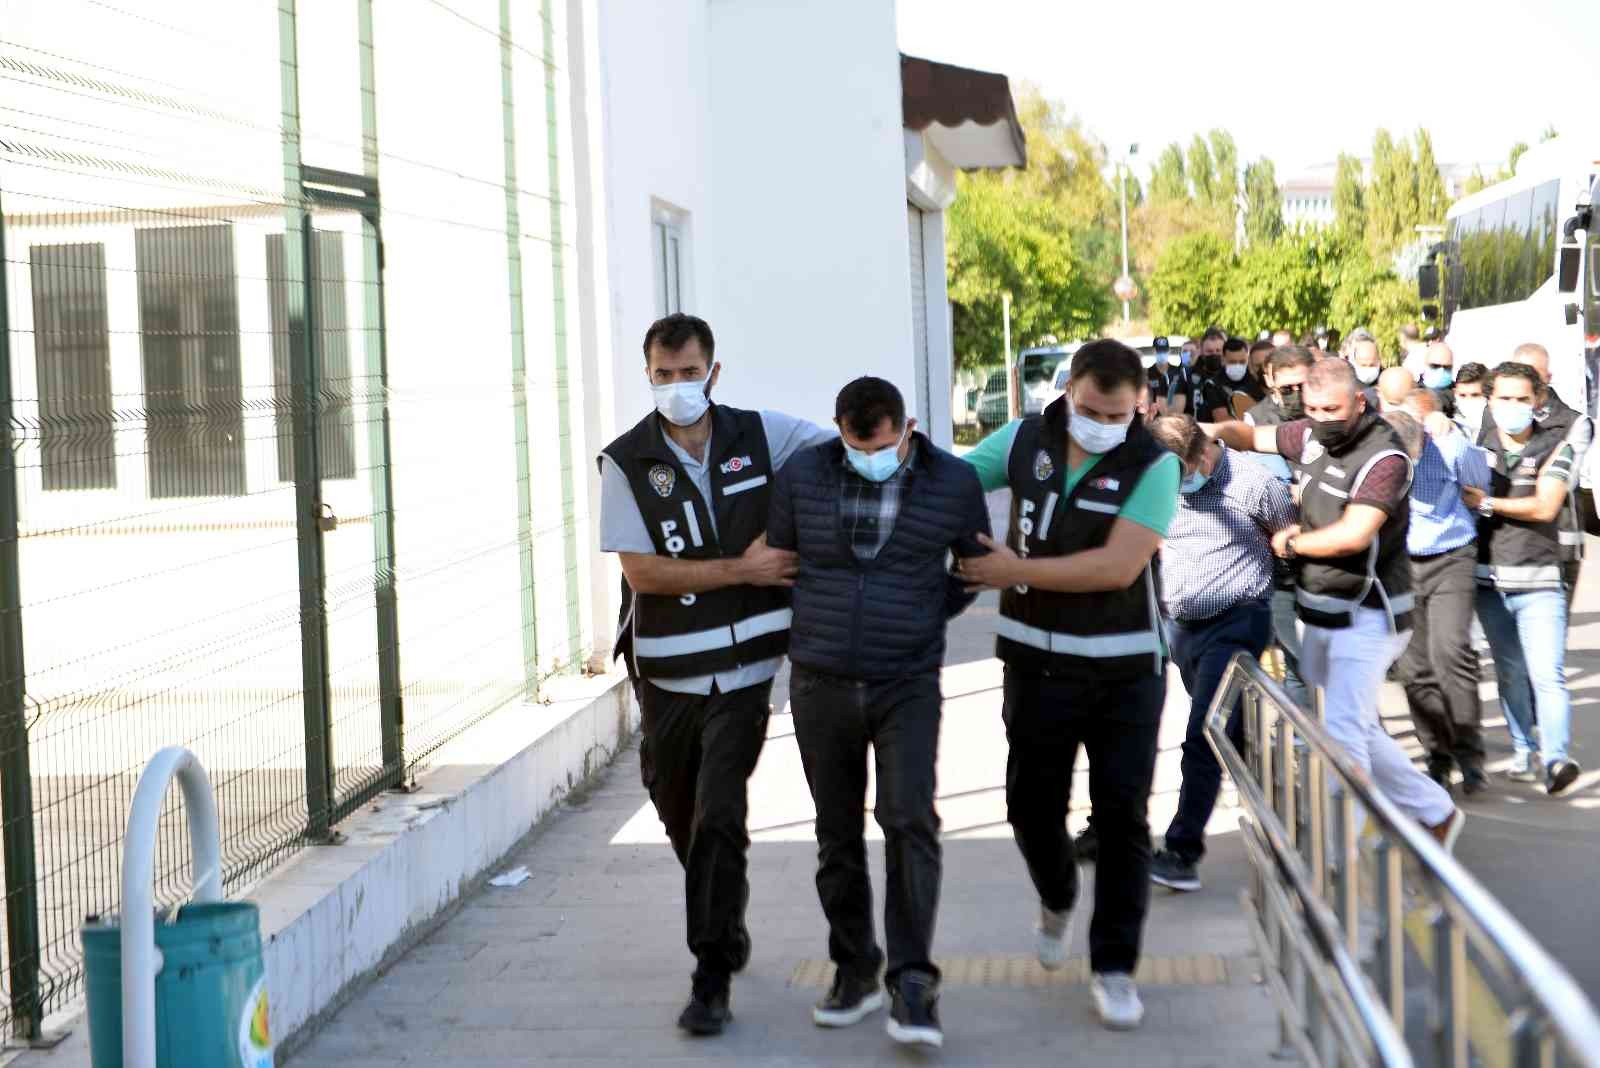 Adana’da ihaleye fesat operasyonunda 87 kişi adliyeye sevk edildi #adana